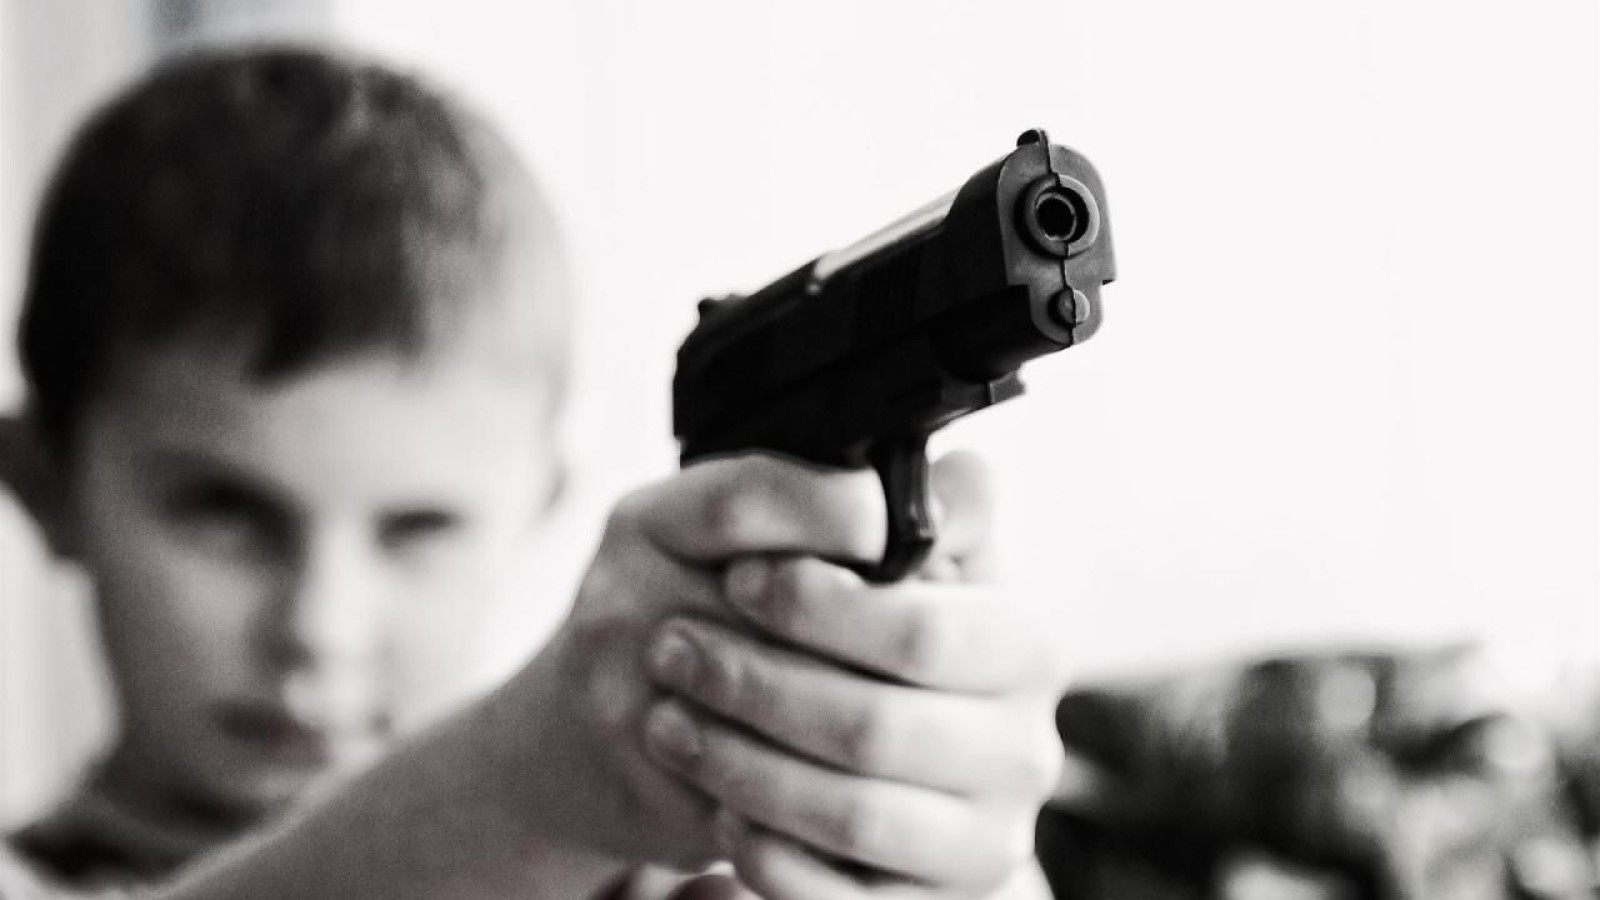 Silahla oynayan çocuk, kendini vurdu;